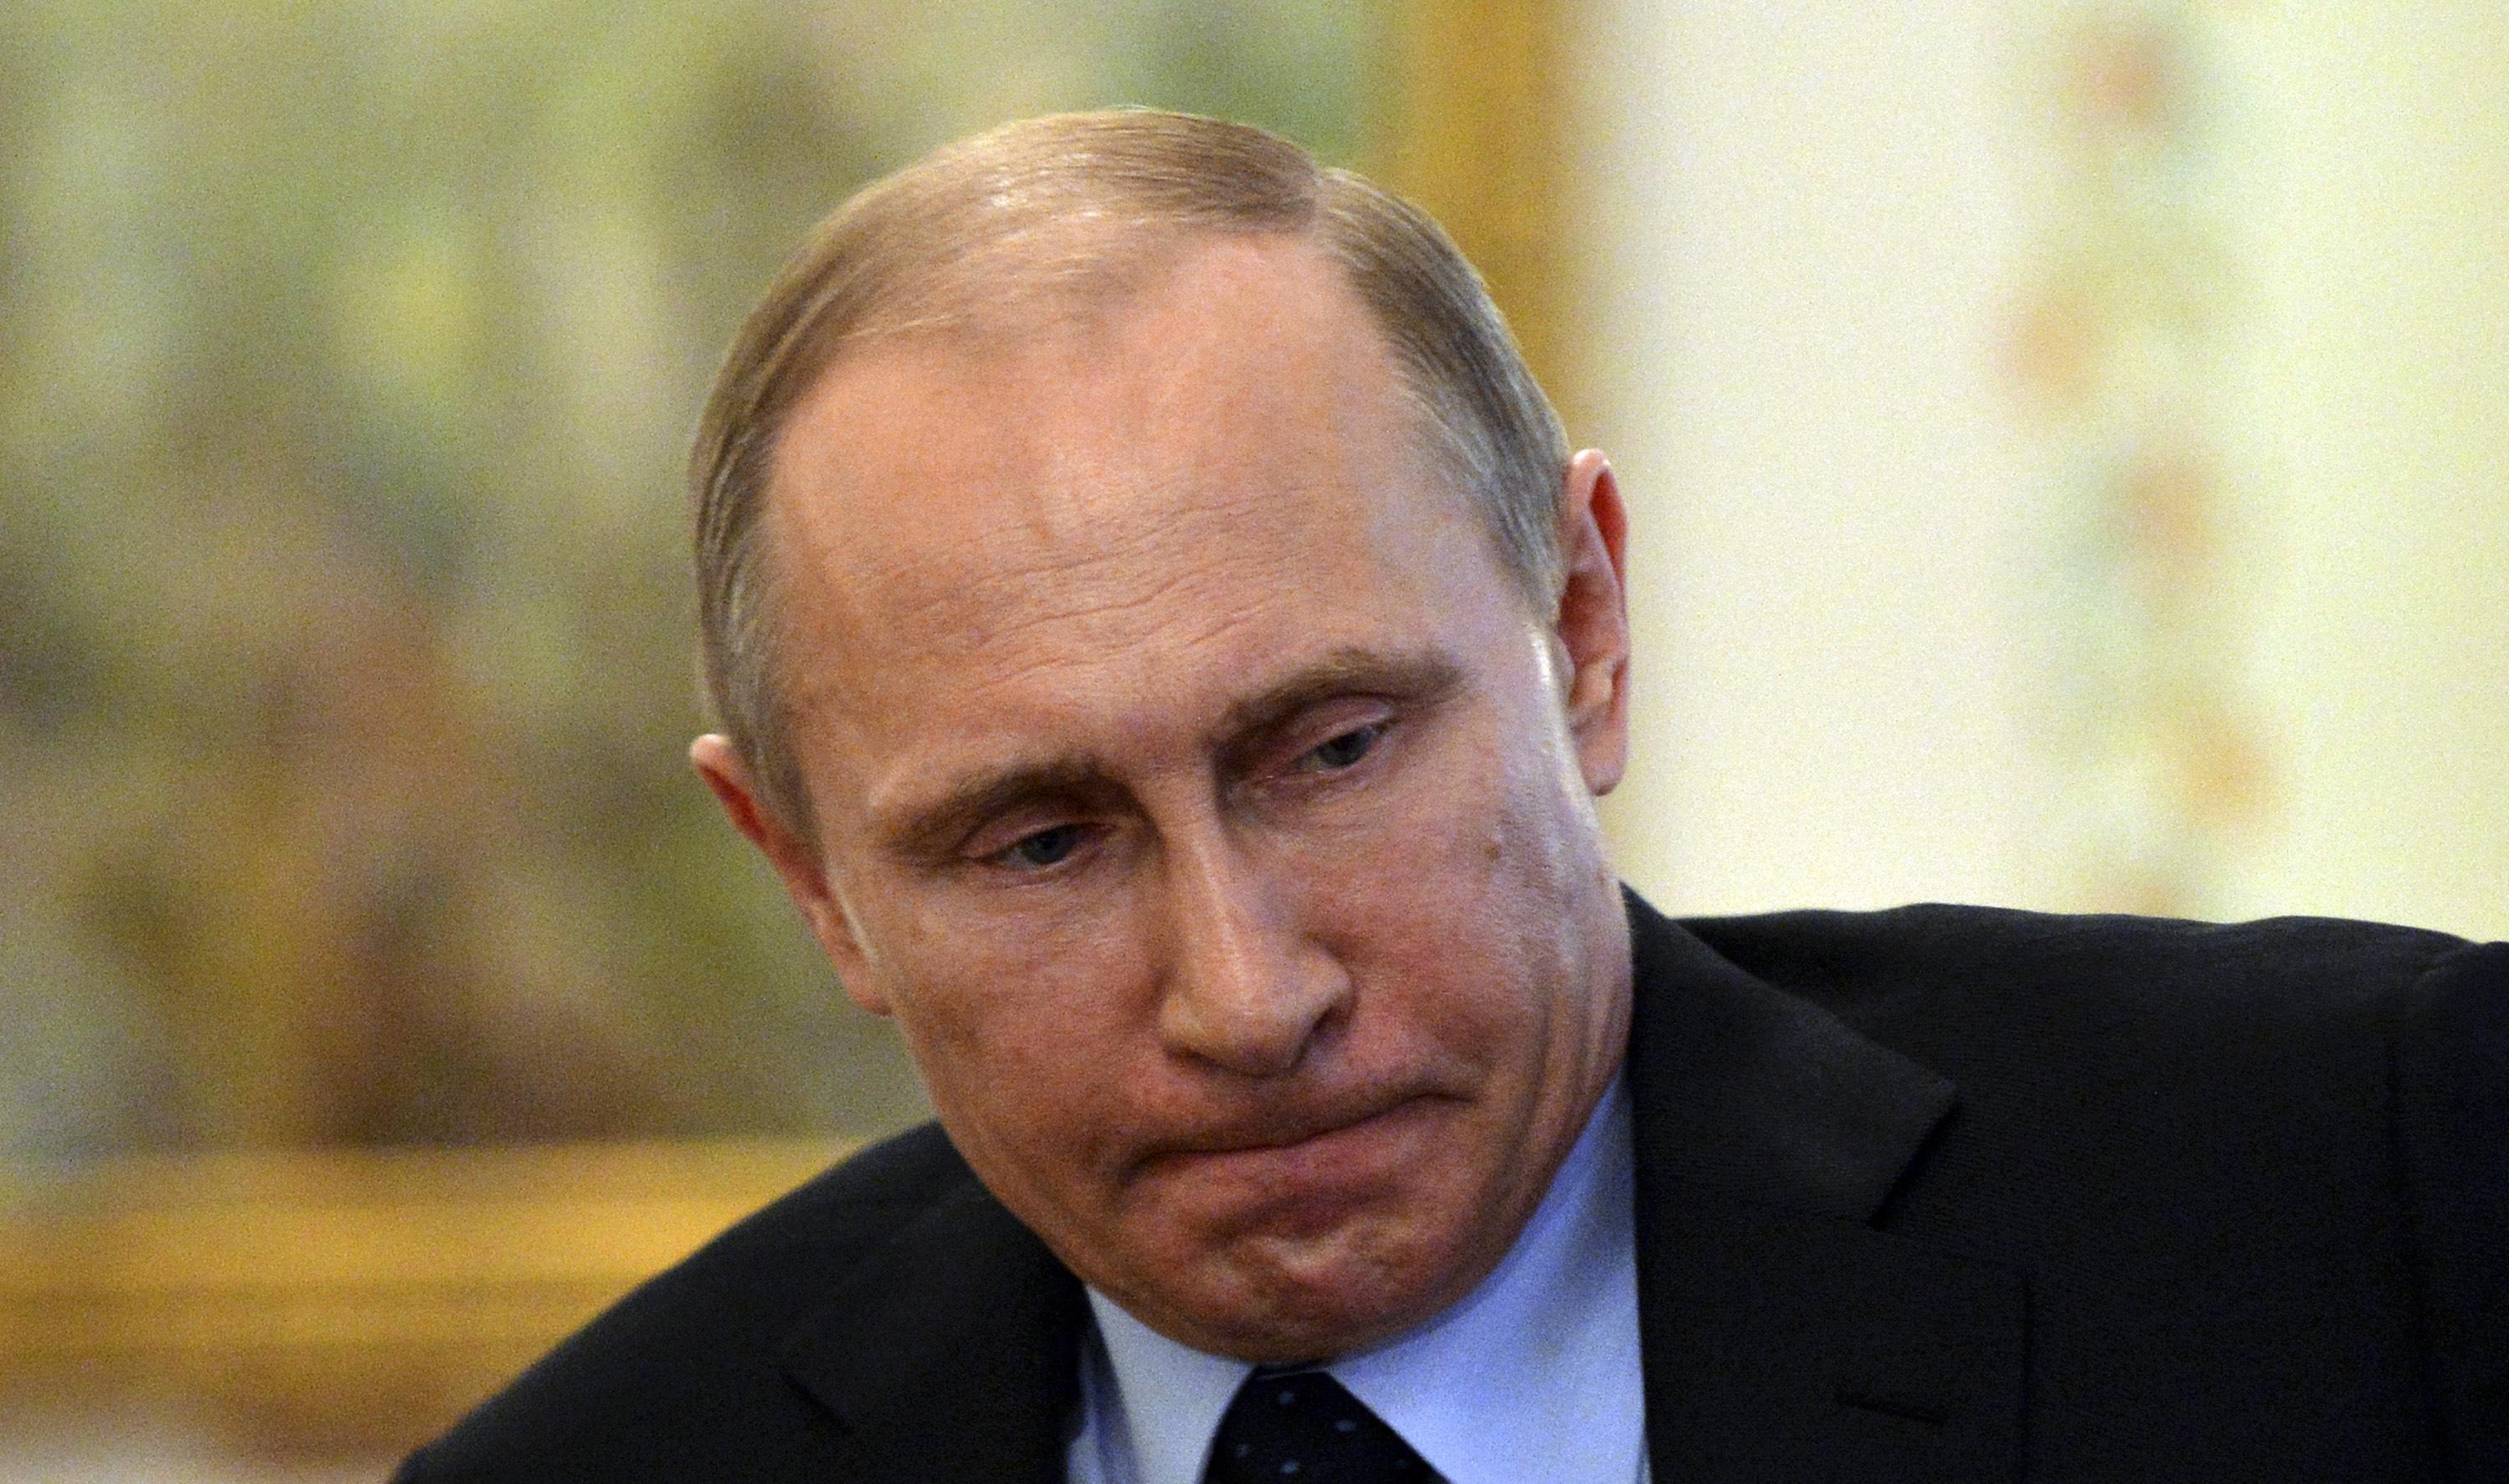 Чего боится Путин: доллара по 100 рублей или раскола российской элиты?